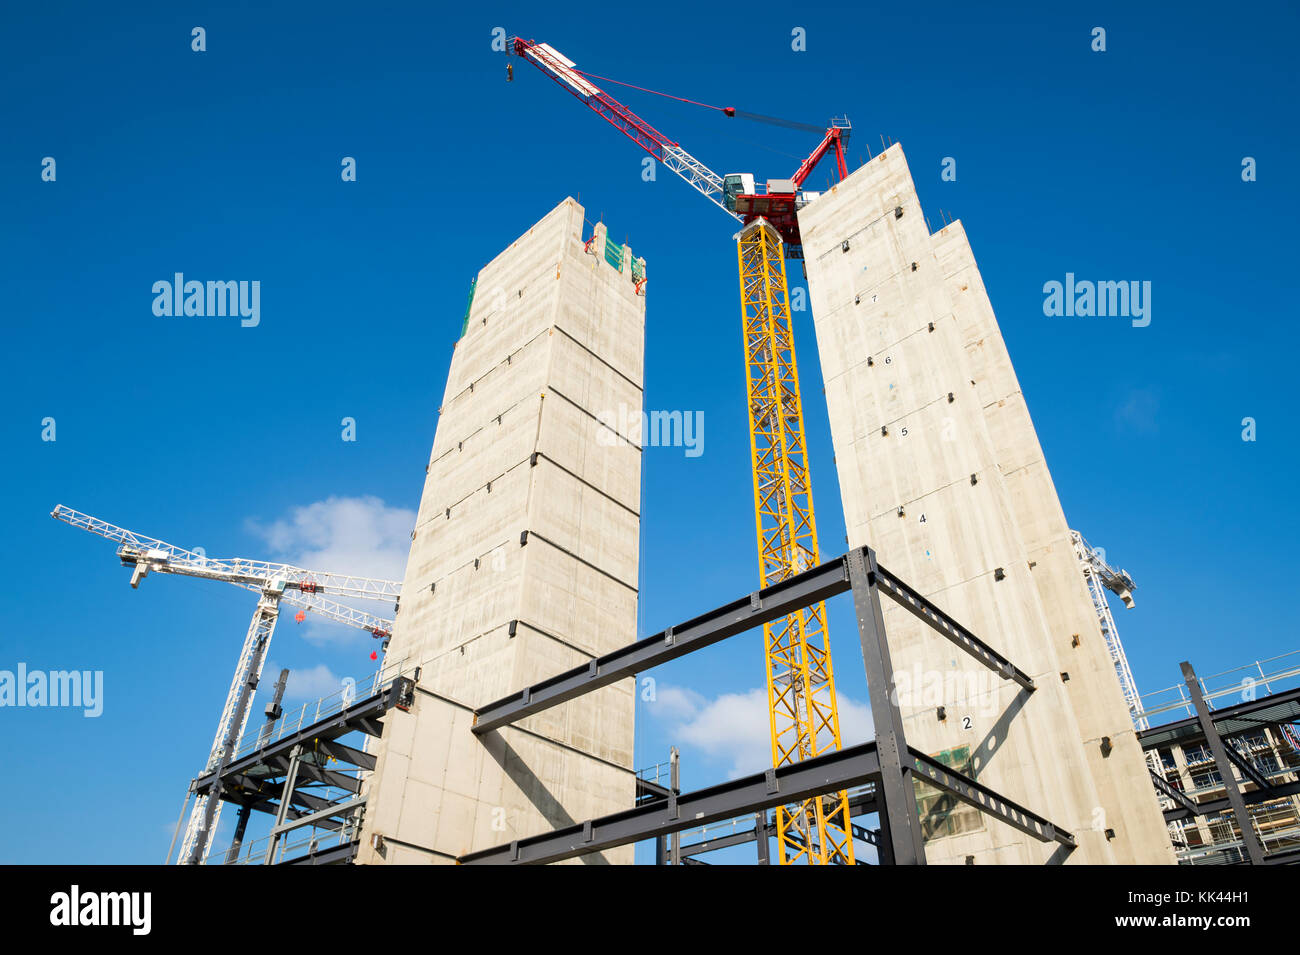 Hola modernas torres sitio en construcción con grúas bajo el brillante cielo azul Foto de stock